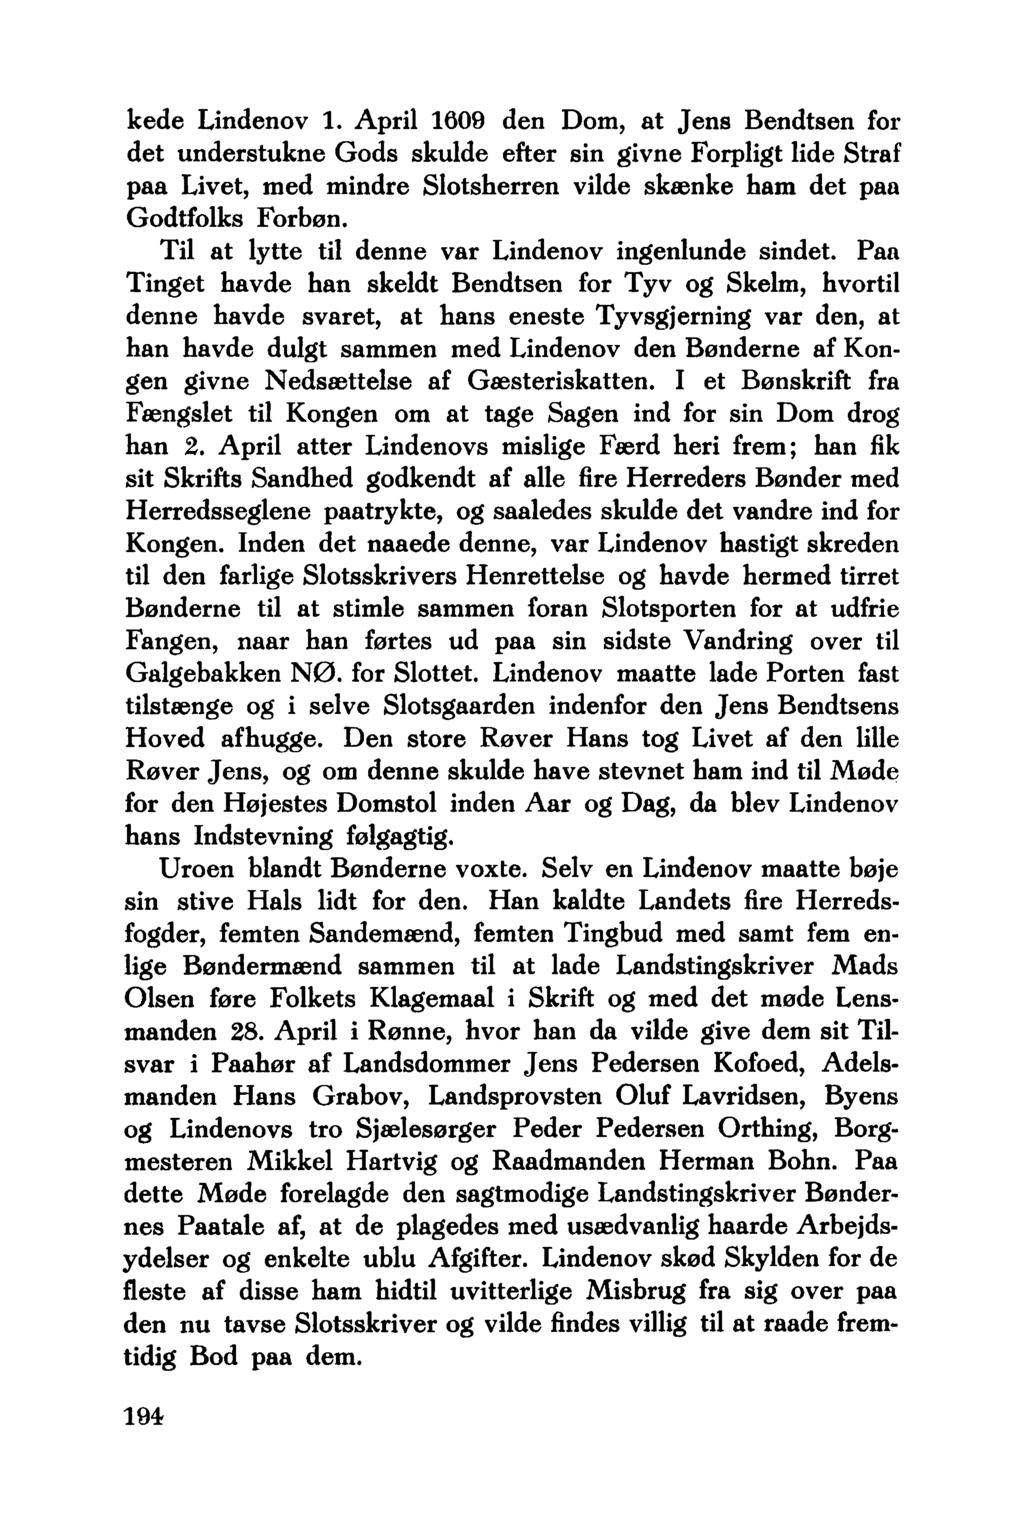 kede Lindenov 1. April 1609 den Dom, at Jens Bendtsen for det understukne Gods skulde efter sin givne Forpligt lide Straf paa Livet, med mindre Slotsherren vilde skænke ham det paa Godtfolks Forbøn.